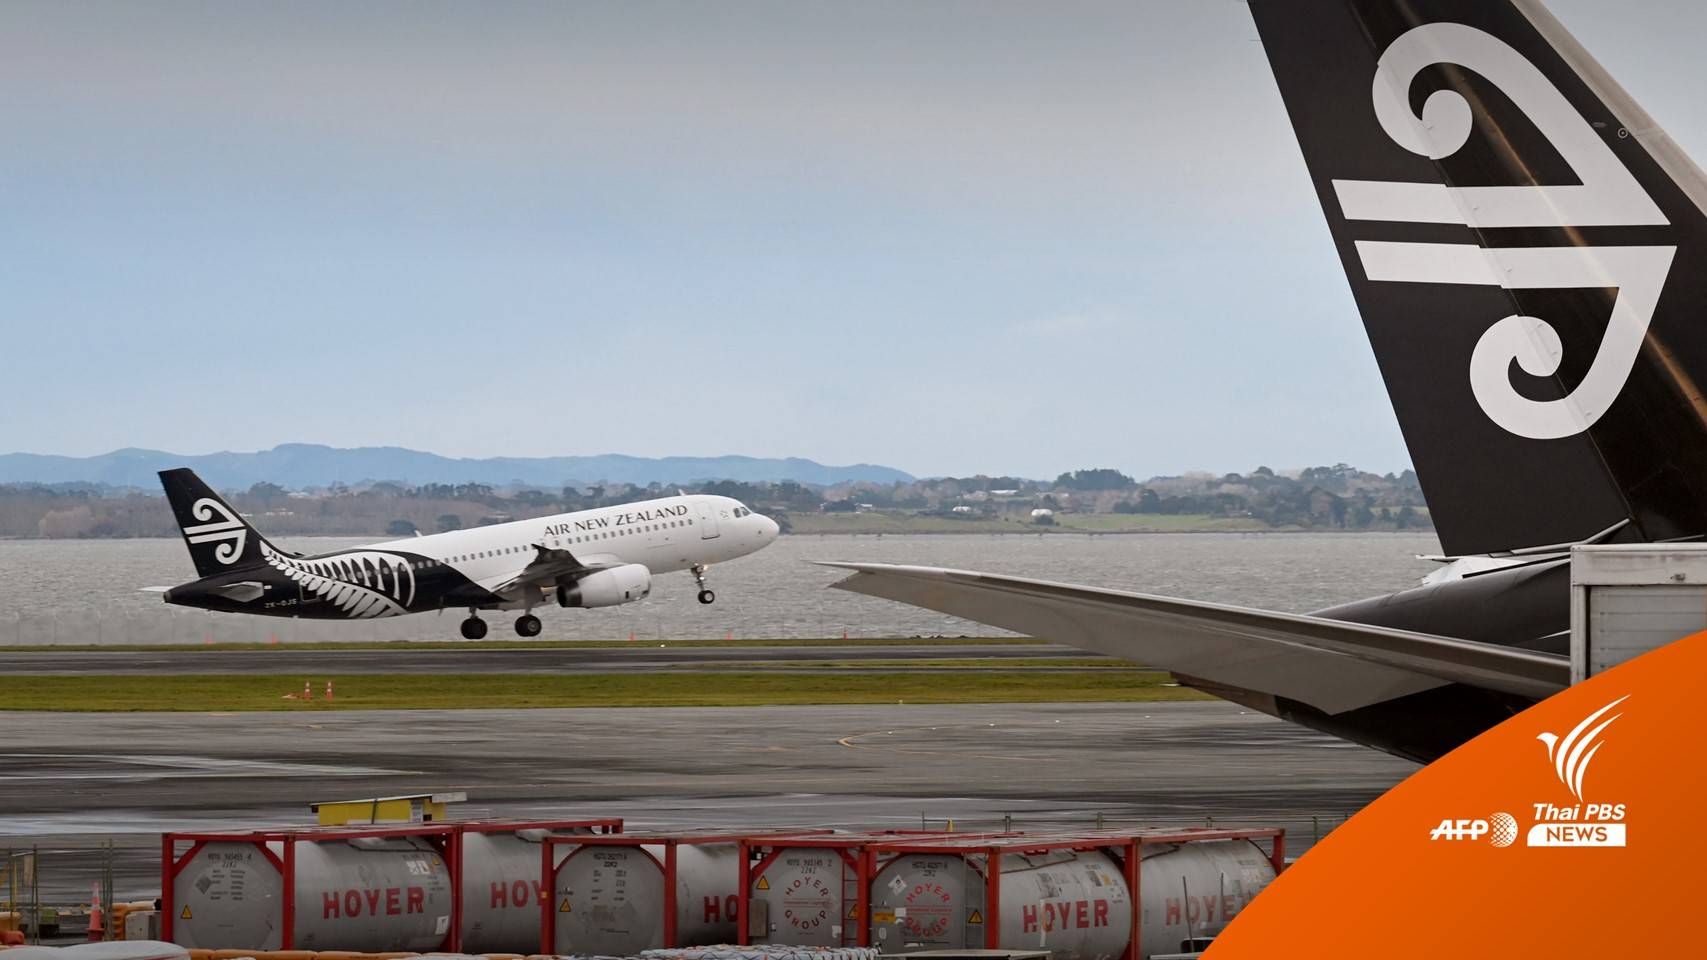 กฎใหม่ "Air New Zealand" ให้ผู้โดยสารชั่งน้ำหนักก่อนขึ้นบิน 